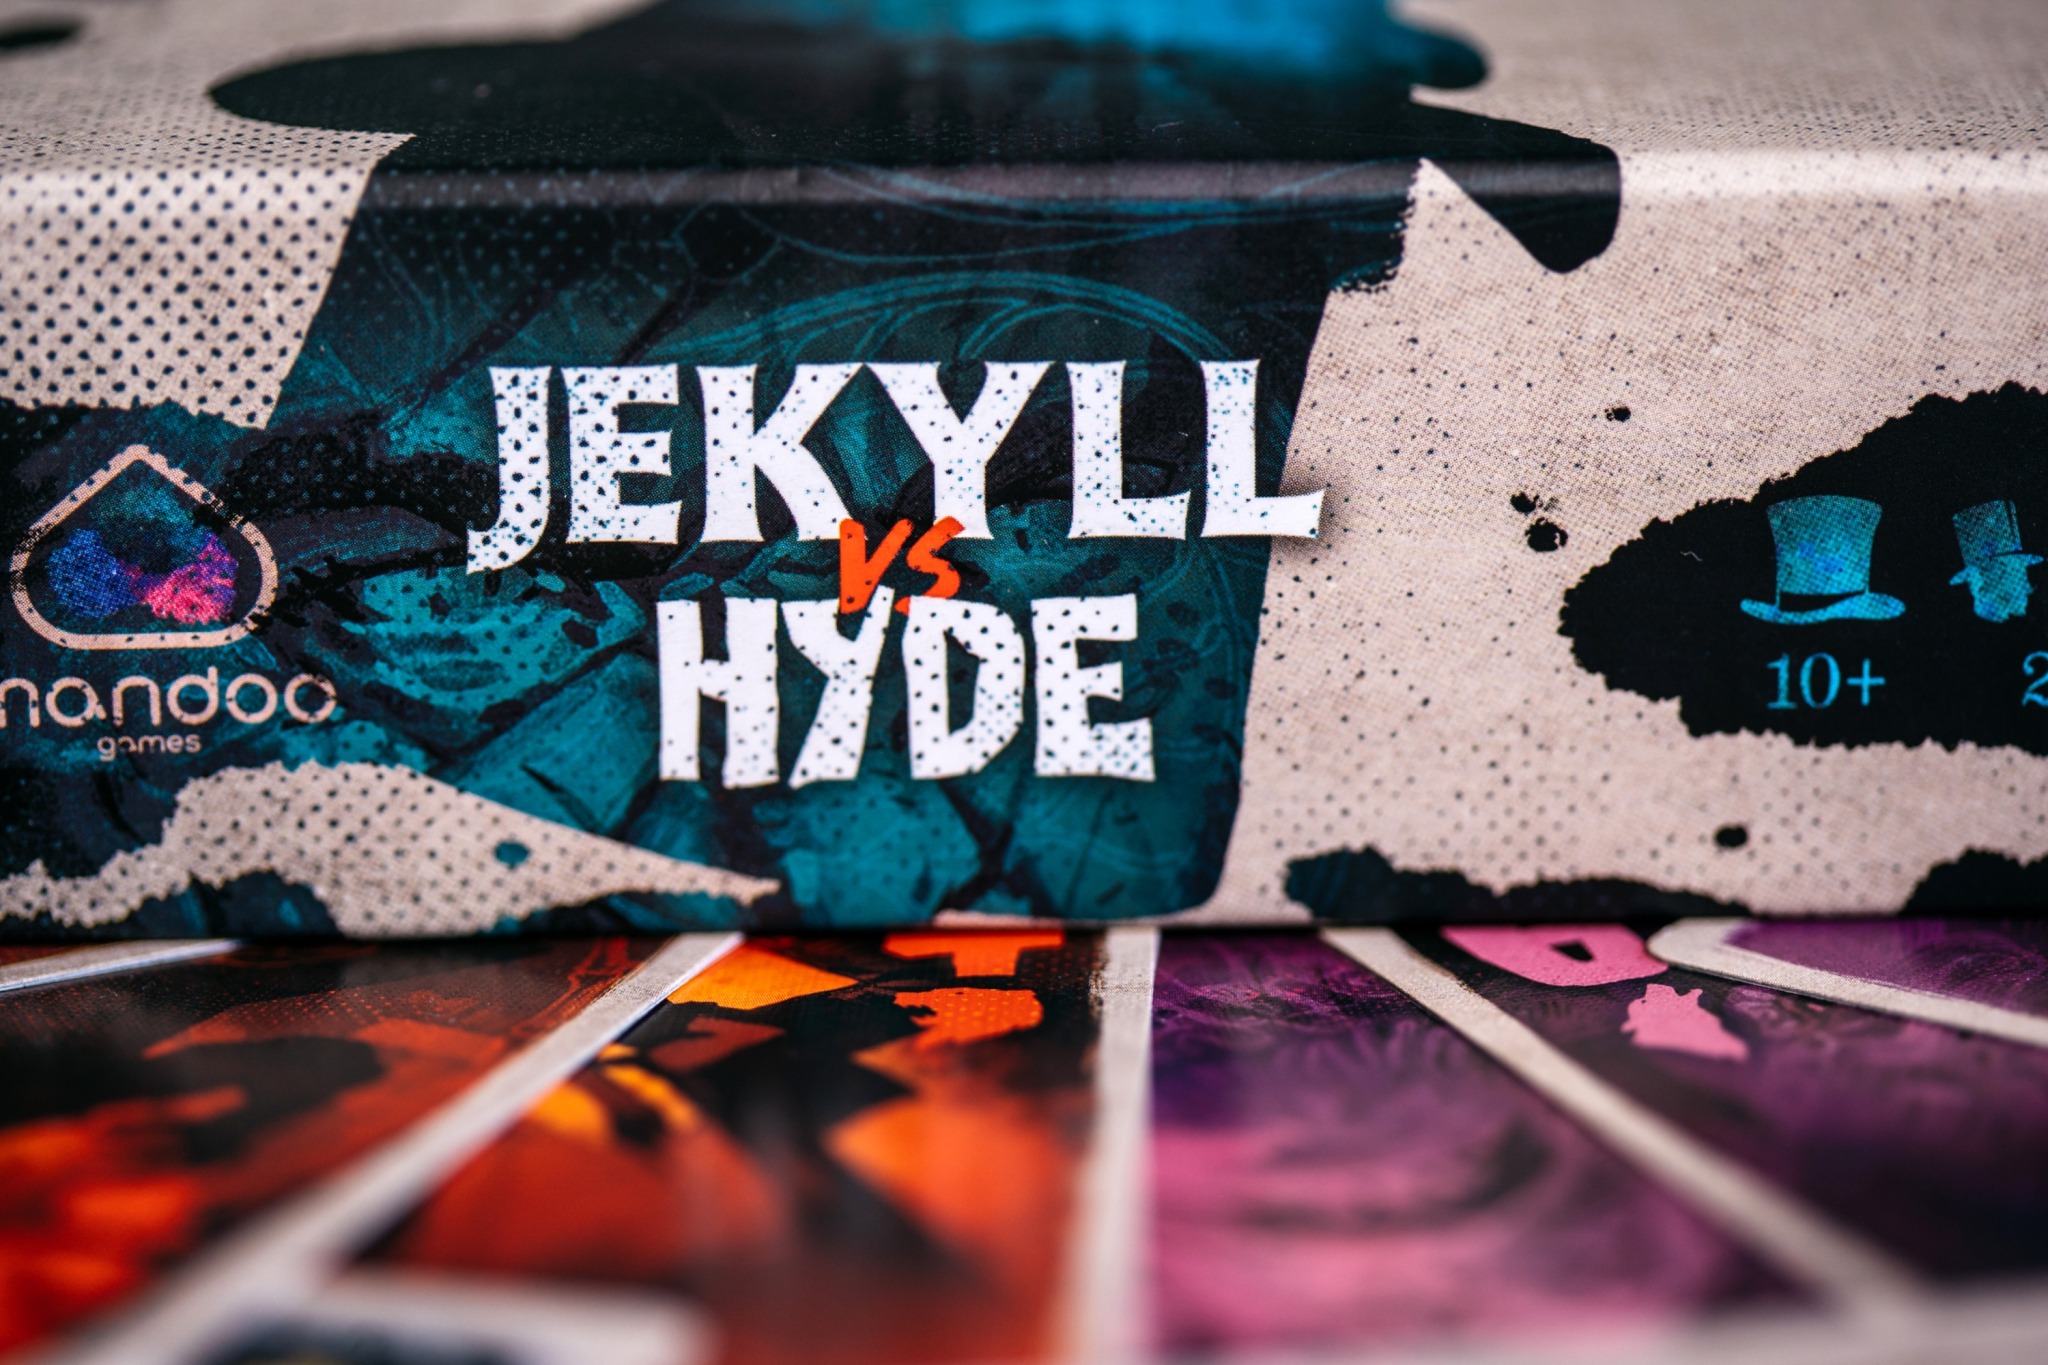 Jekyll vs Hyde mandoo games